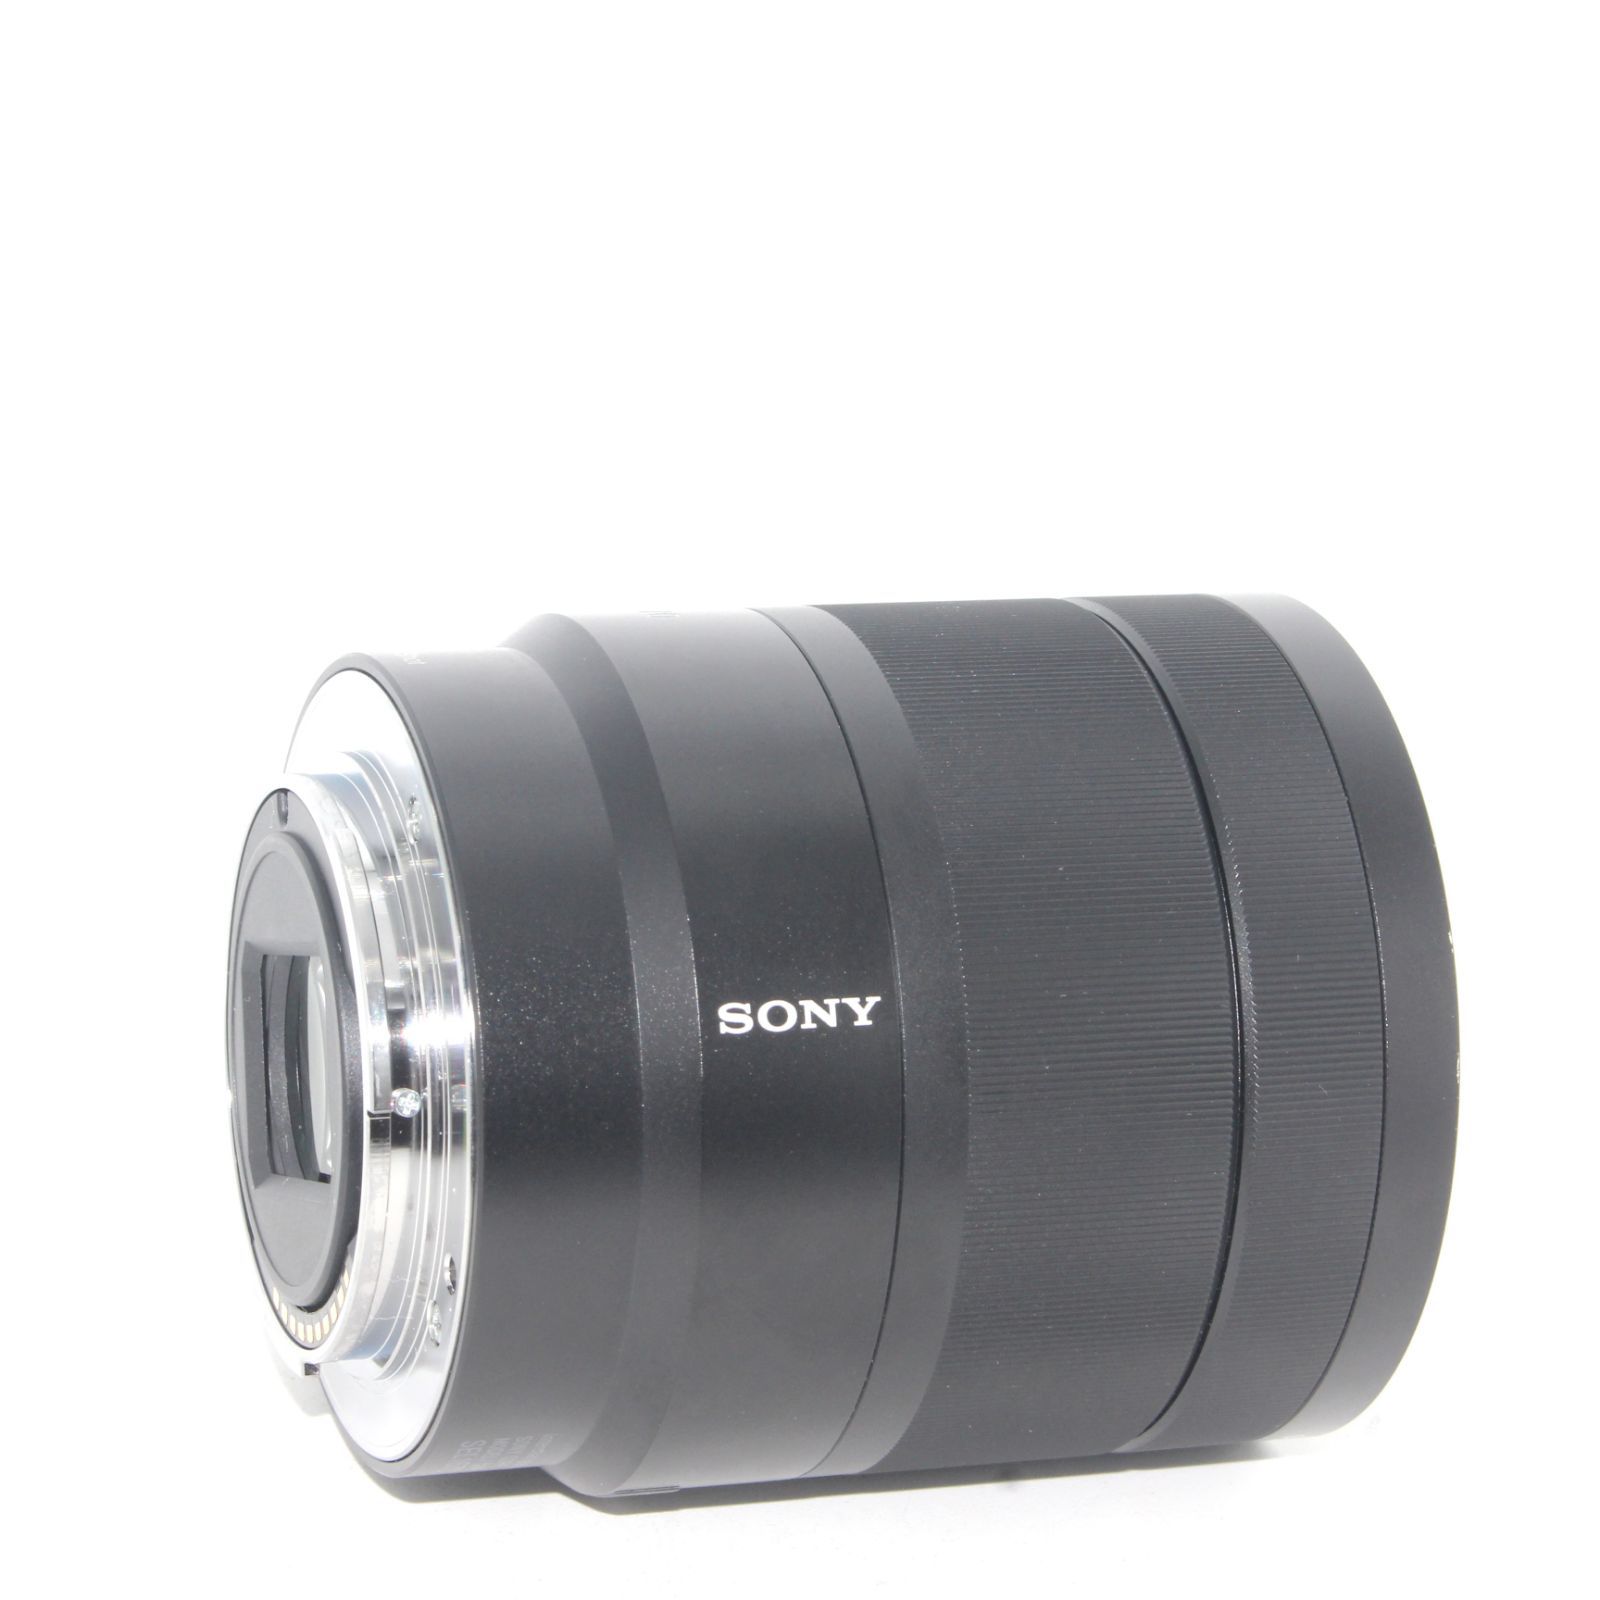 美品 SONY ソニー 標準ズームレンズ APS-C Vario-Tessar T* E 16-70mm F4 ZA OSS ツァイスレンズ  デジタル一眼カメラα[Eマウント]用 純正レンズ / SEL1670Z - メルカリ